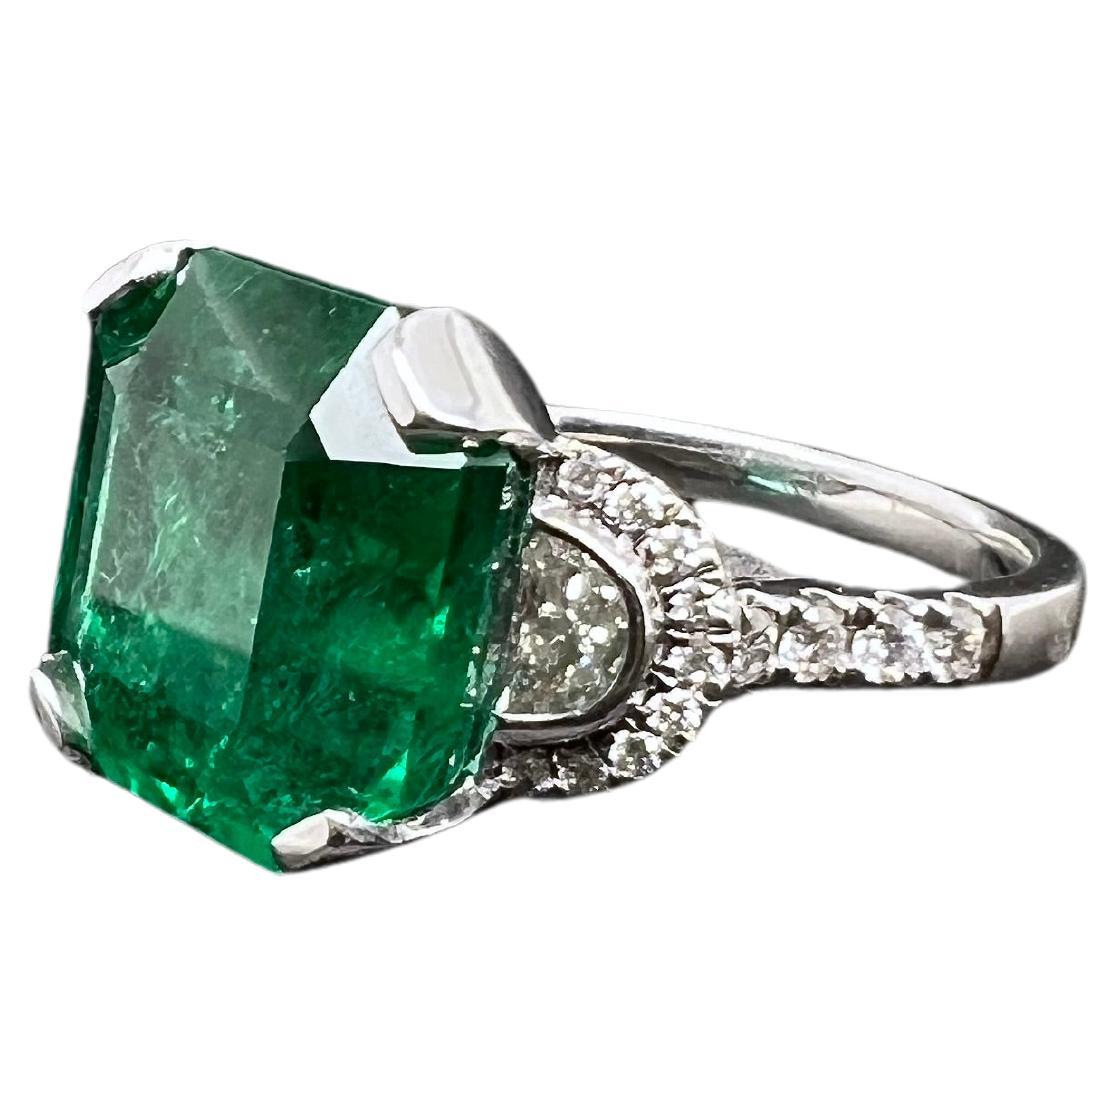 Dieser lebhafte sambische Smaragd ist in einem modifizierten Ring mit 3 Steinen gefasst. 2 Halbmond-Diamanten an den Seiten und runde Brillanten runden das Meisterwerk ab. Der lüsterne, grüne Smaragd steht im Mittelpunkt und bringt in dieser